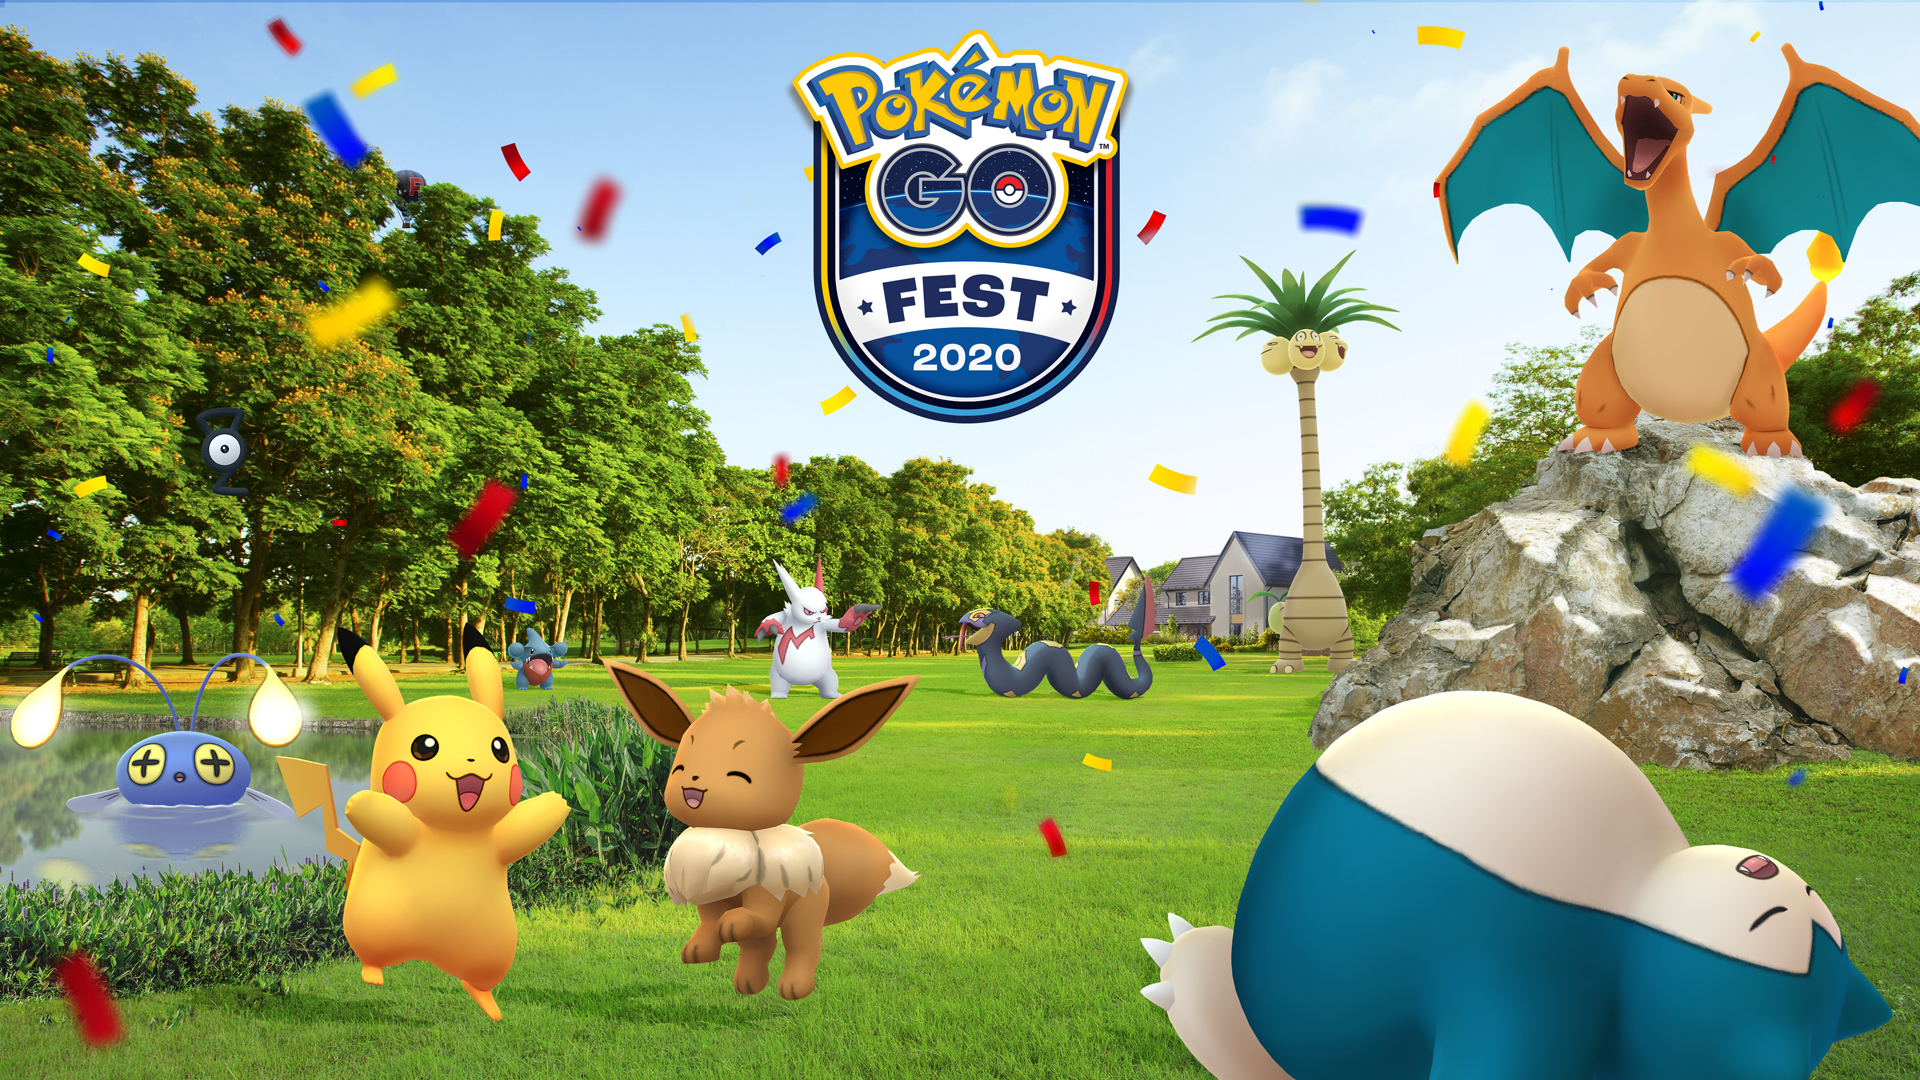 Vé chỉ dành cho trực tuyến Pokémon Go Fest có sẵn với giá $ 15